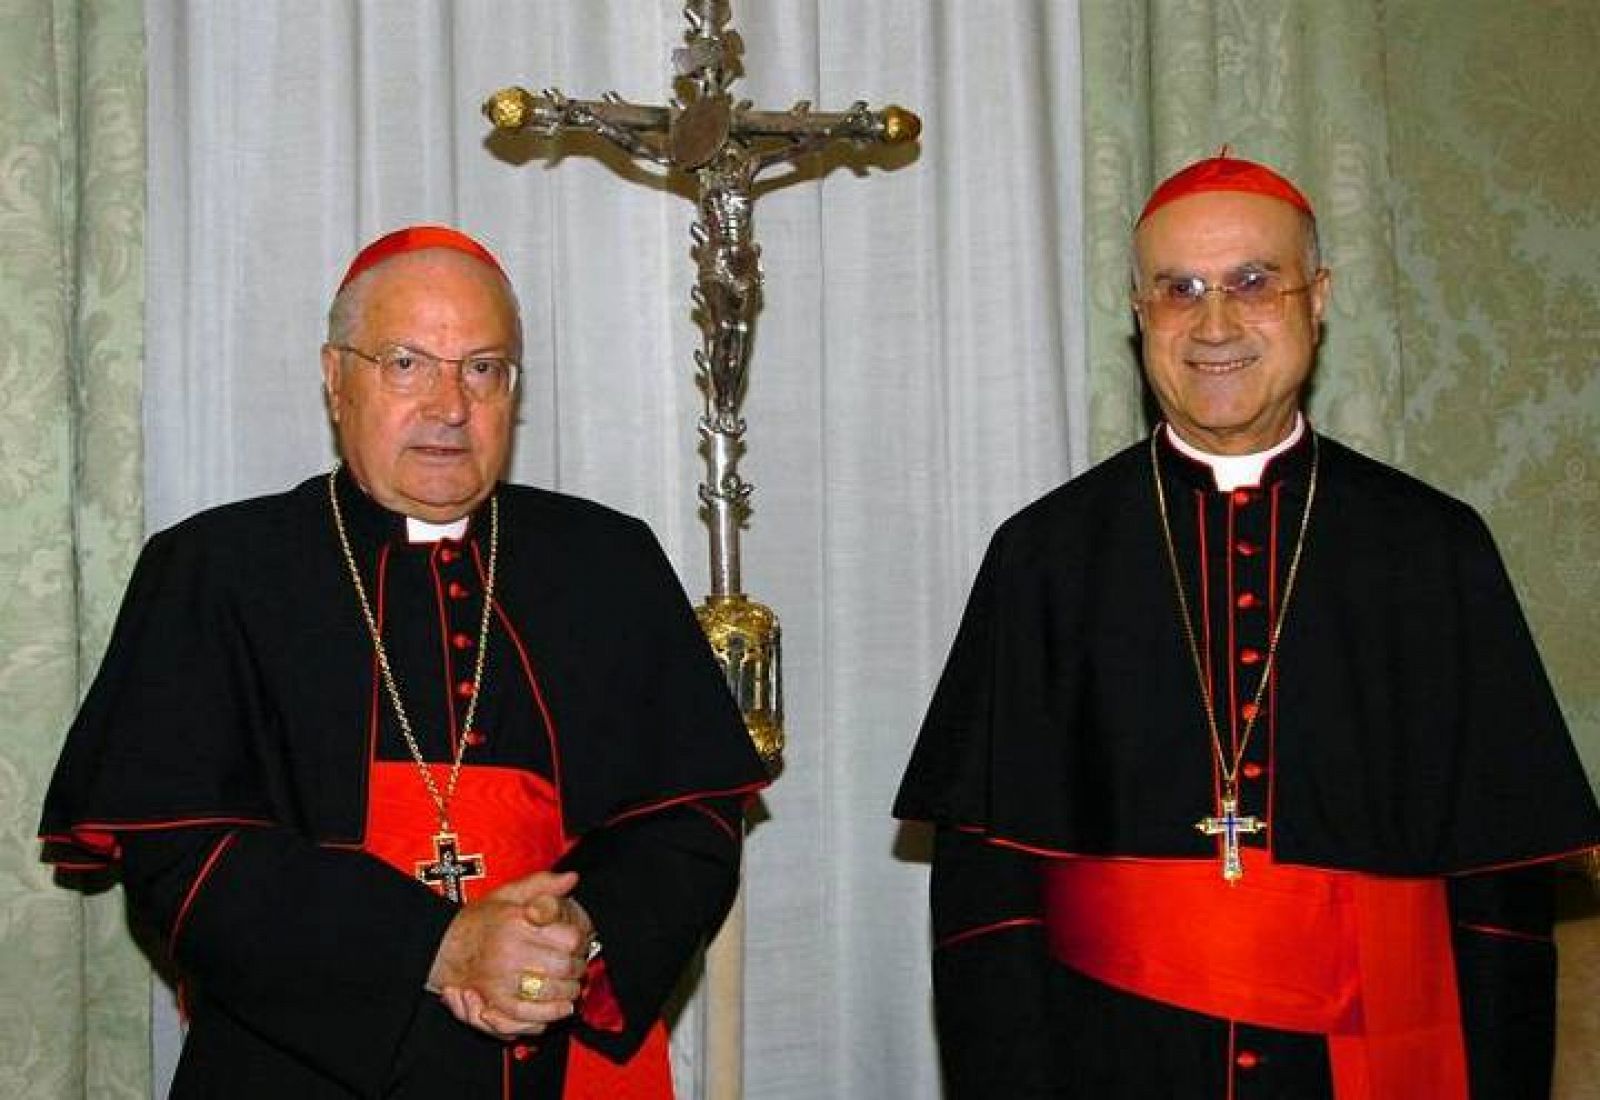 Bertone y Sodano tendrán que dirigir la Santa Sede | RTVE.es